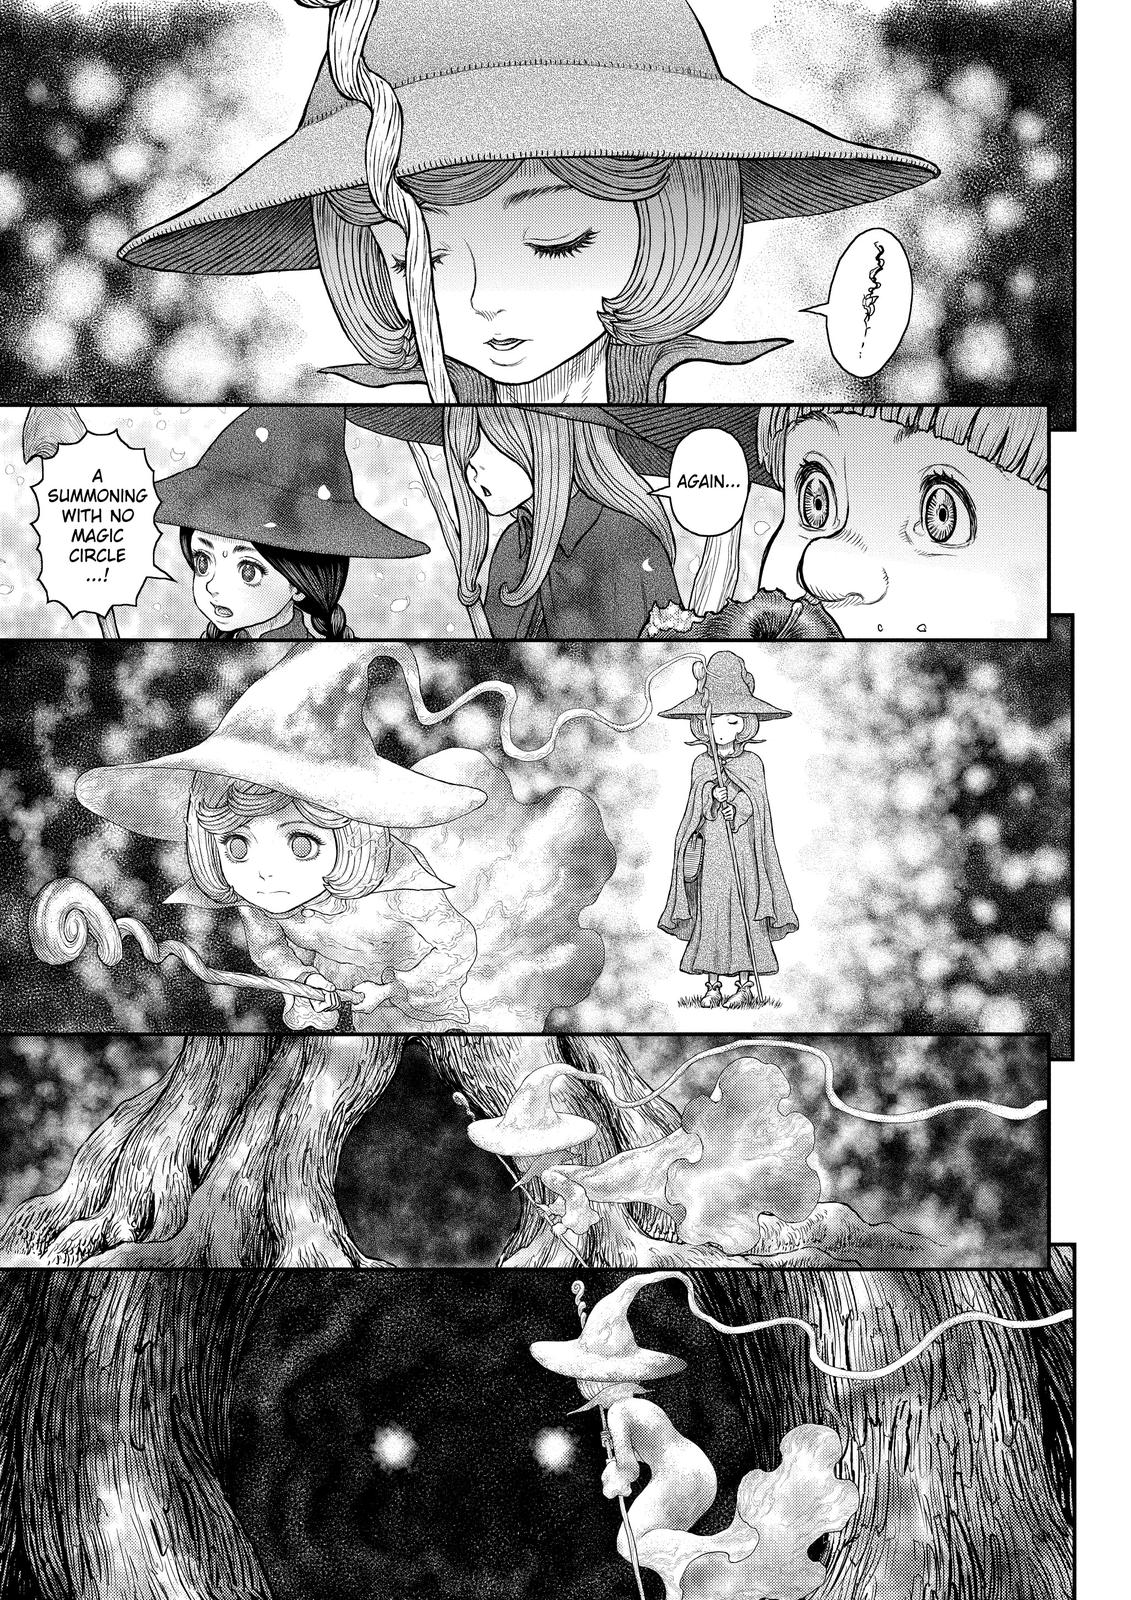 Berserk Manga Chapter 360 image 09